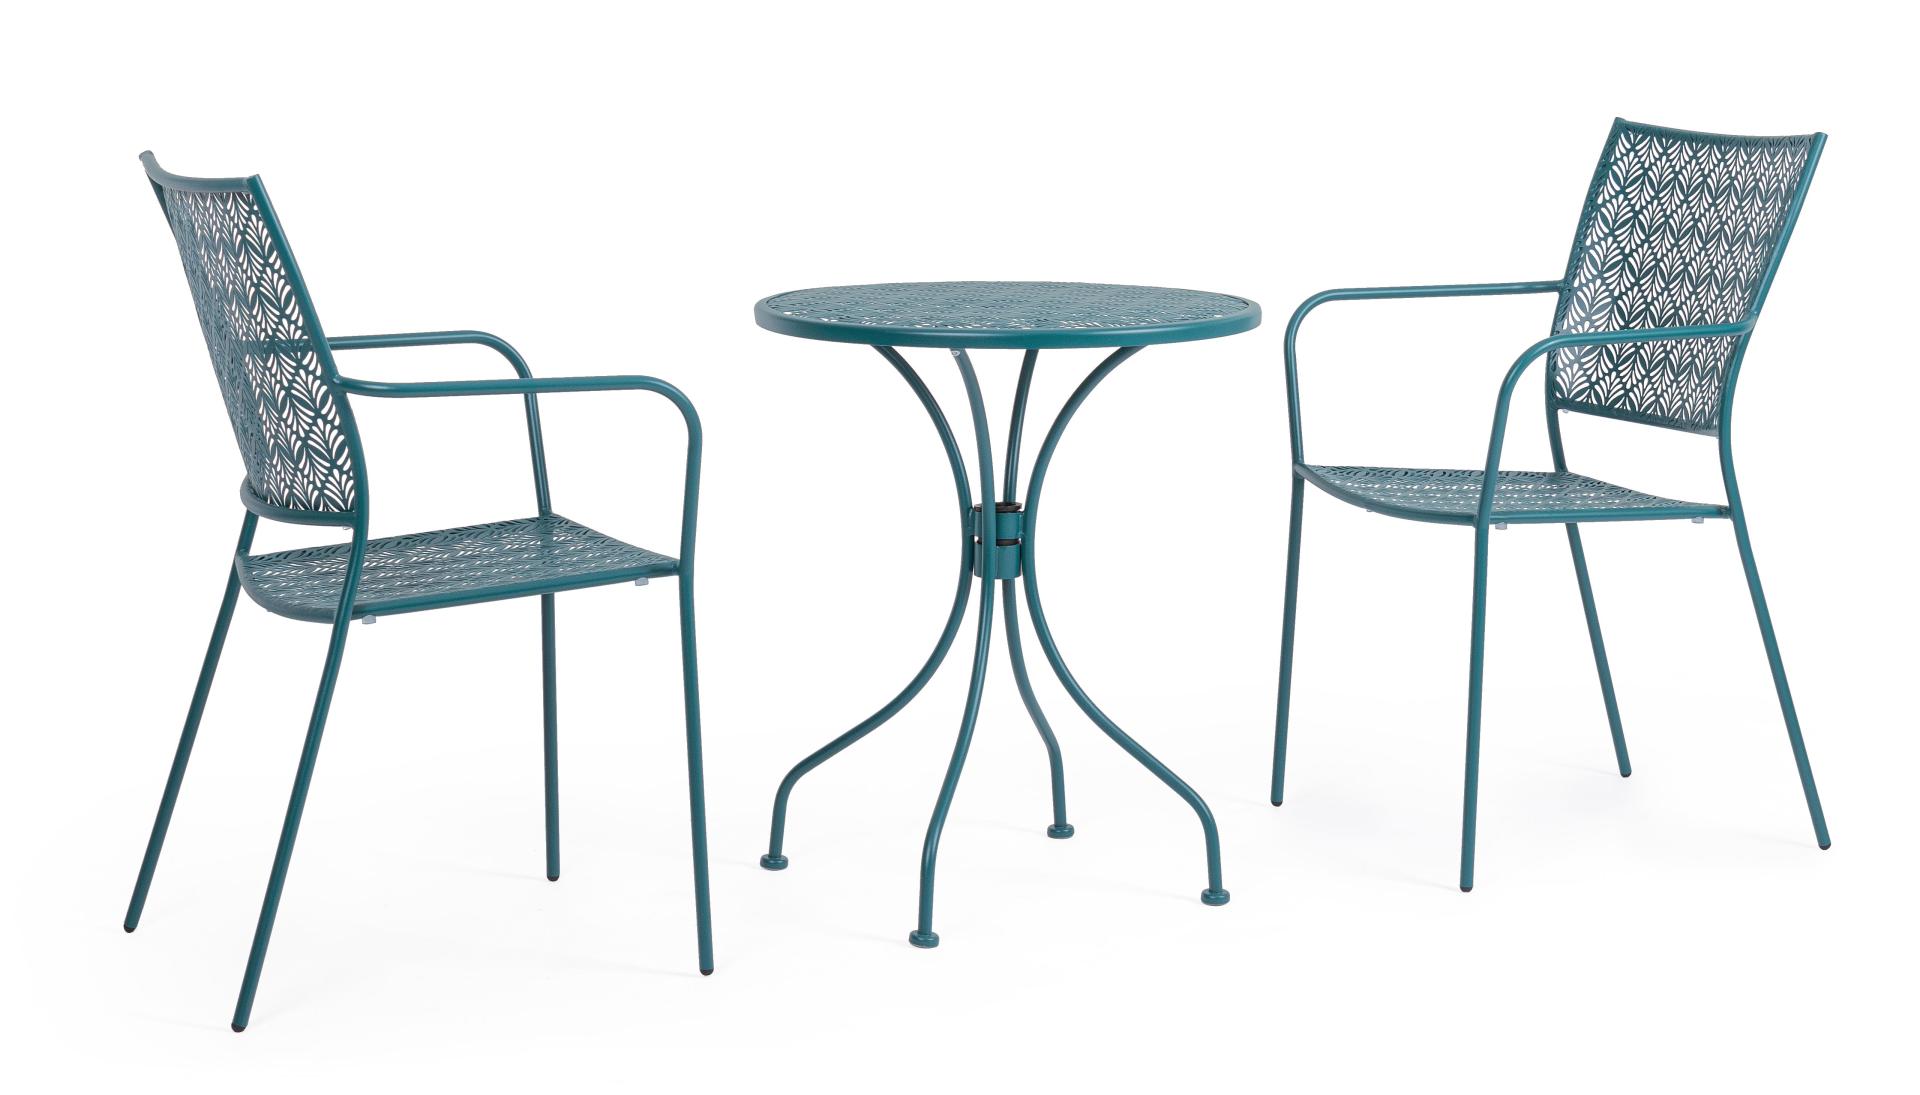 Der Gartenstuhl Lizette überzeugt mit seinem klassischen Design. Gefertigt wurde er aus Aluminium, welches einen blauen Farbton besitzen. Das Gestell ist aus Aluminium und hat eine blaue Farbe. Der Stuhl verfügt über eine Sitzhöhe von 45 cm und ist für de